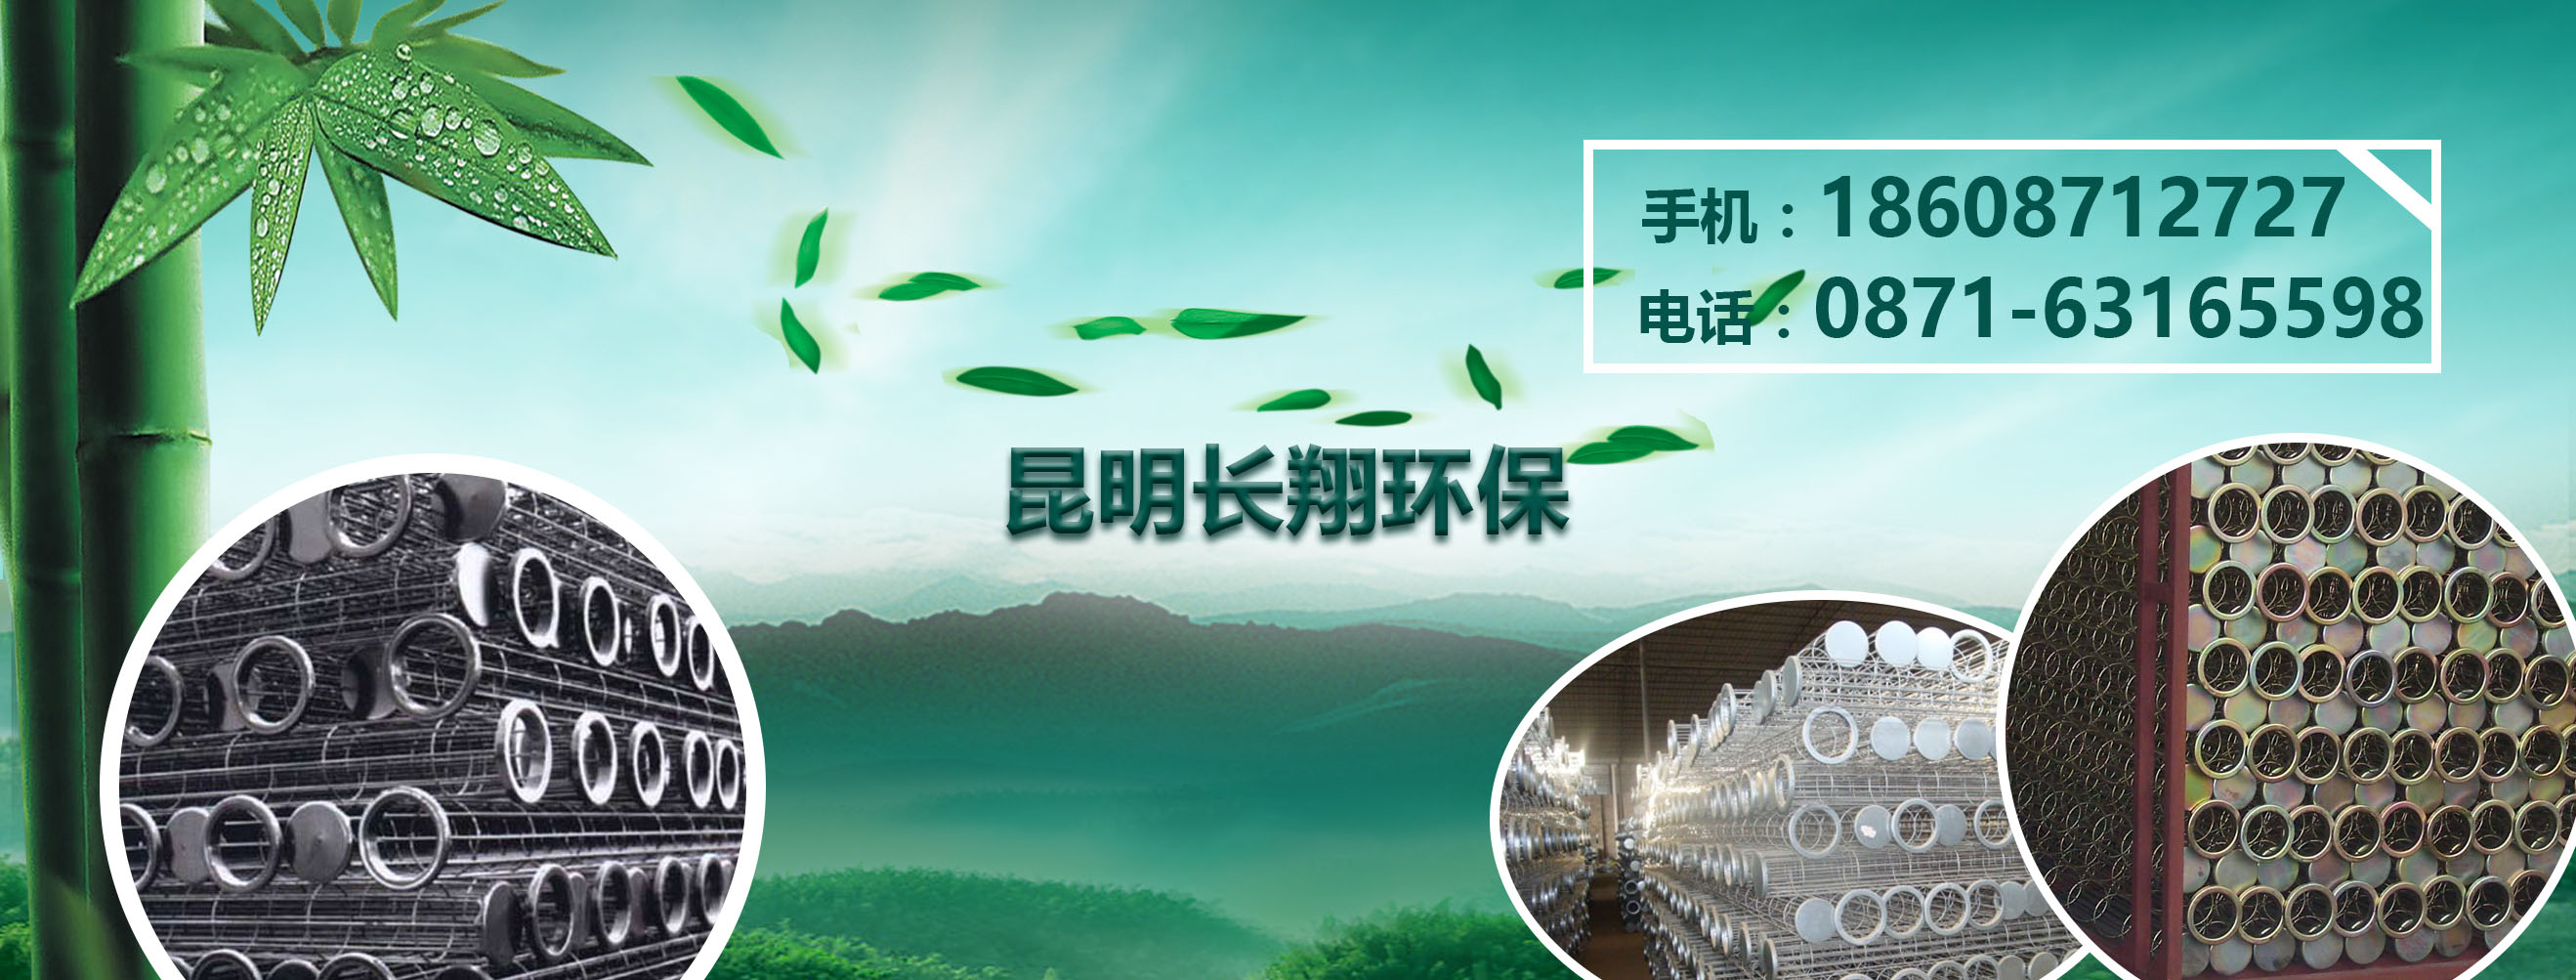 茂名云南除尘器袋笼厂家加入富海360进行网站推广优化